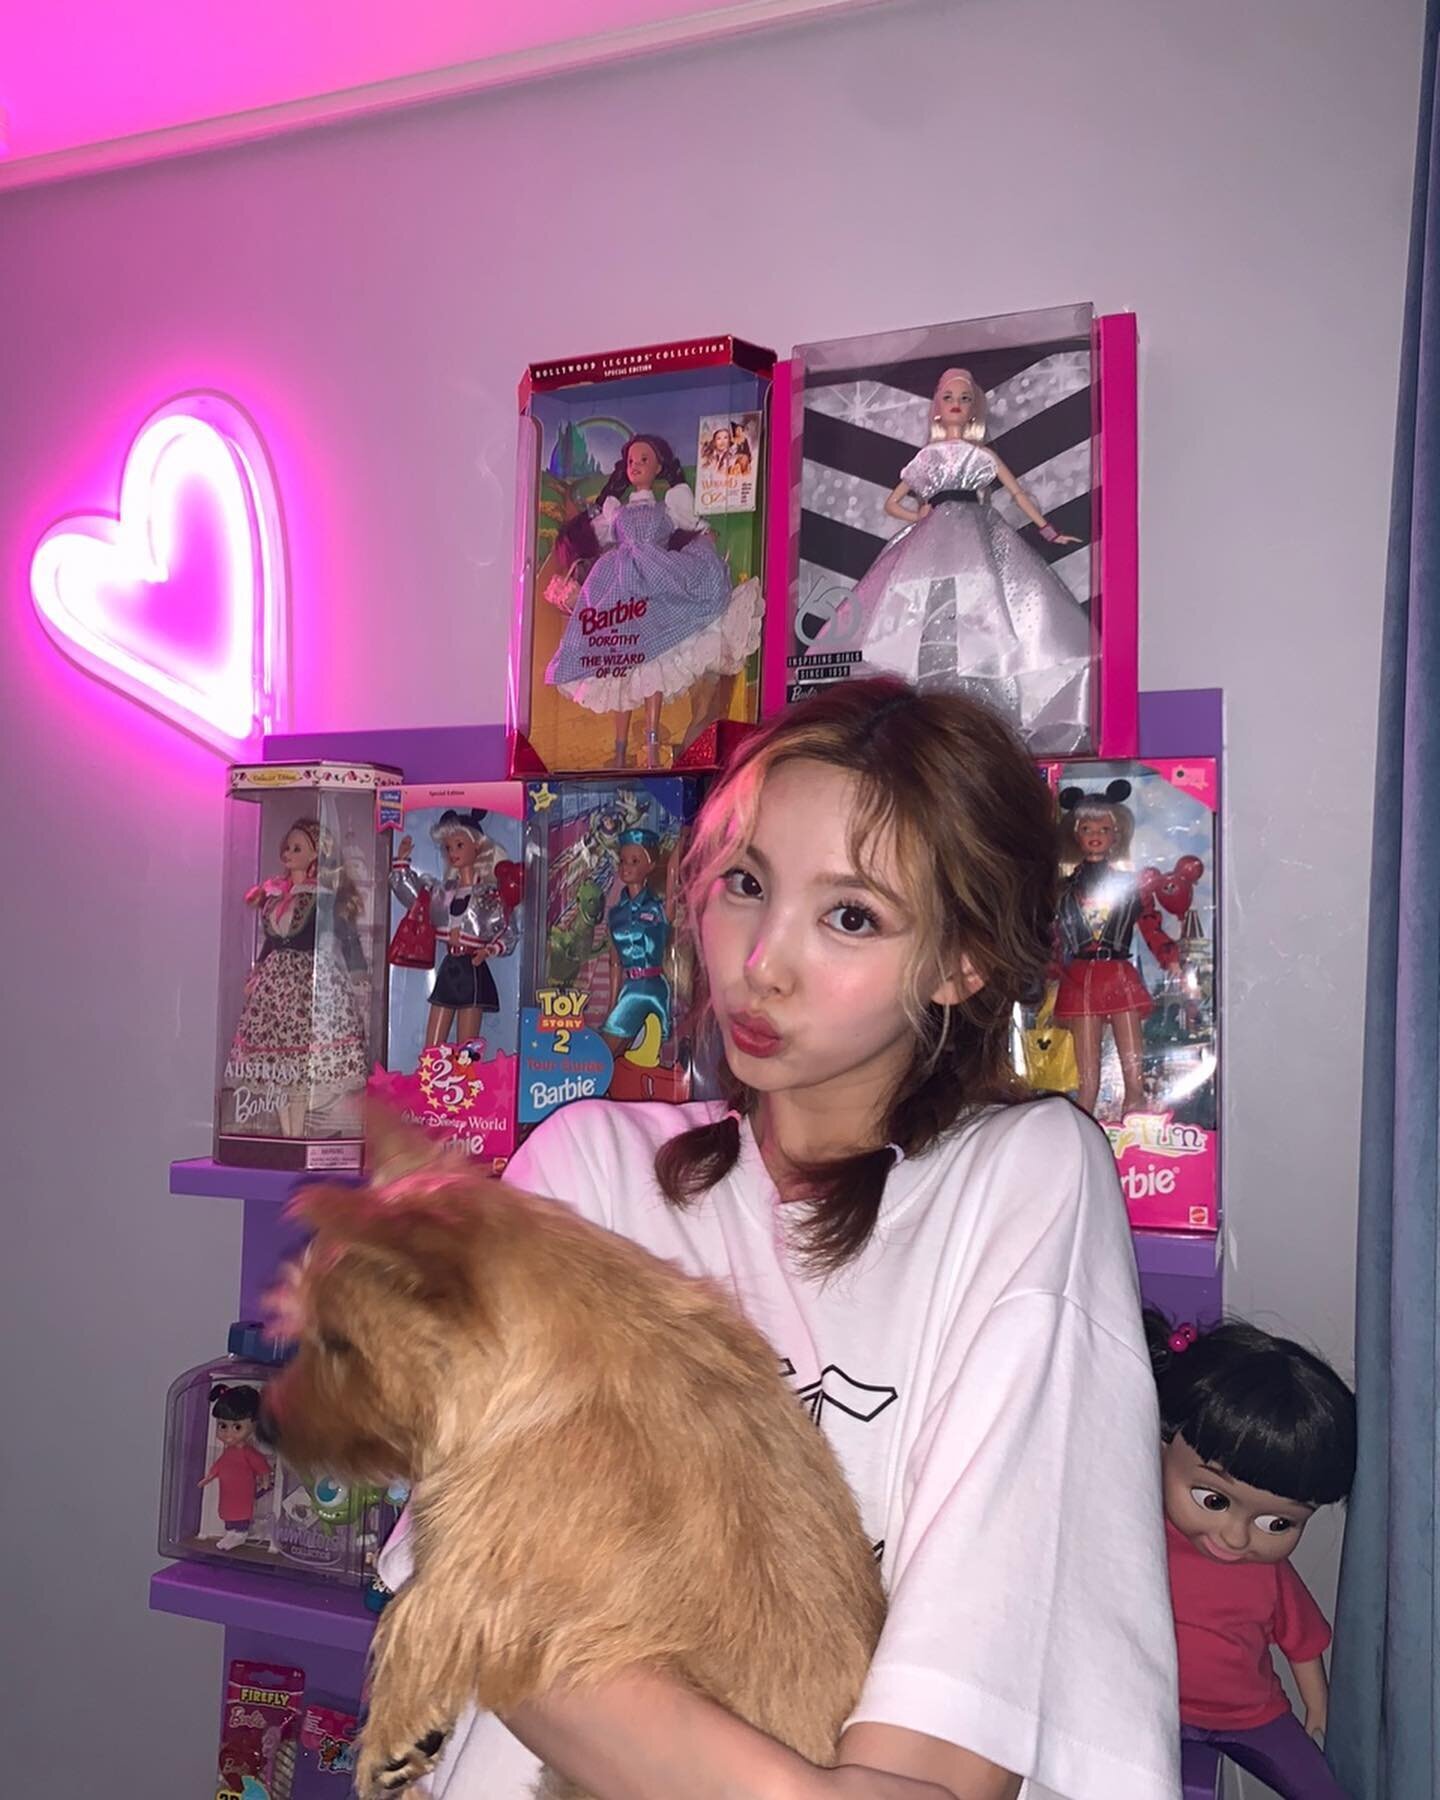 210726 TWICE Instagram Update - Momo & Nayeon